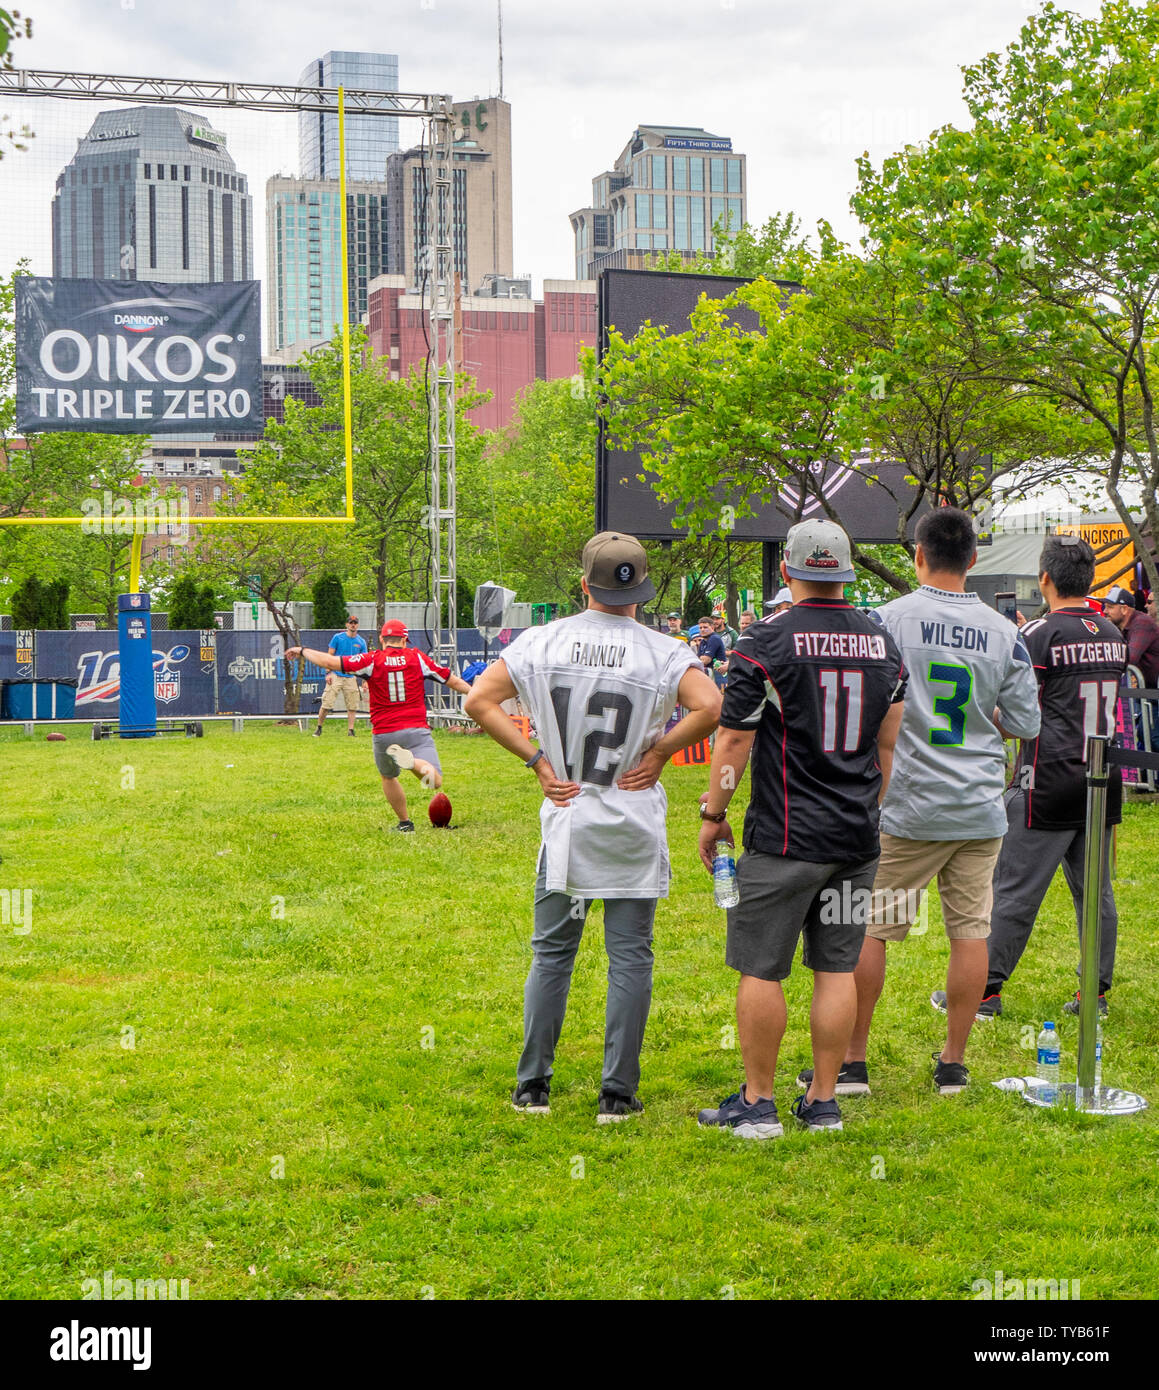 Männliche NFL Fans in ein Ziel kicking Wettbewerb im NFL Draft 2019 Nissan Stadium, Nashville, Tennessee, USA. Stockfoto